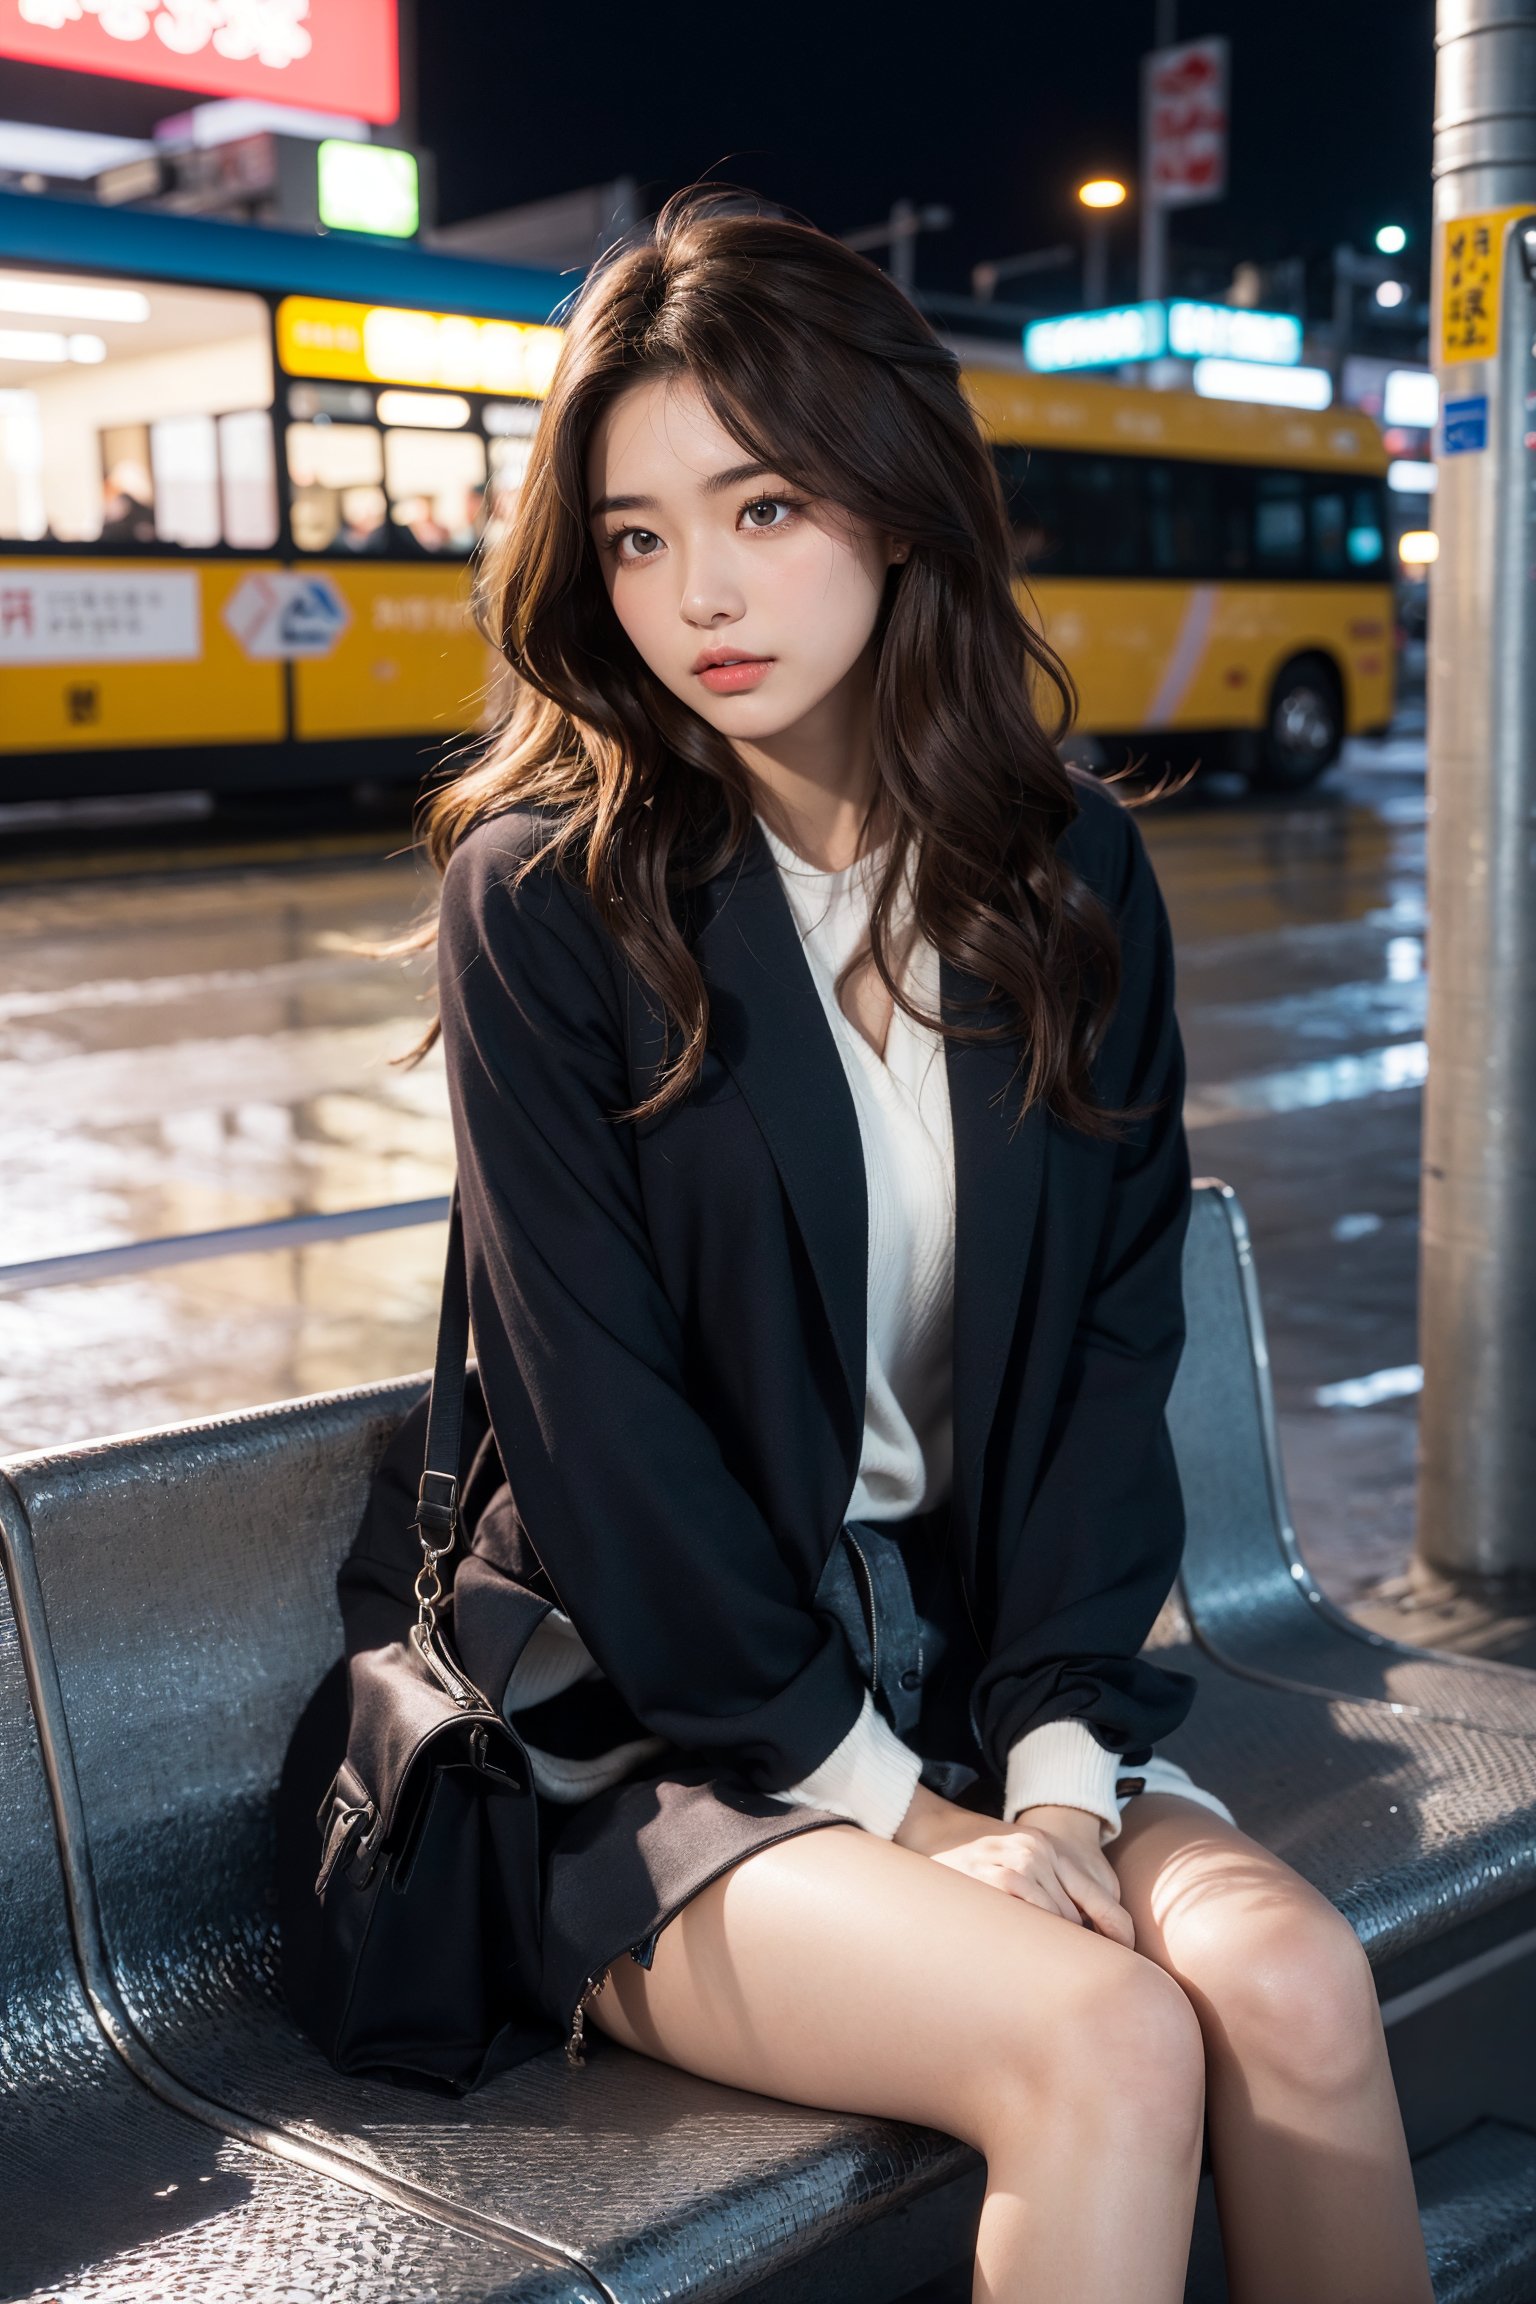 (1girl), ((beautiful eyes, long wavy hairs, brown hair, Hair tousled by the breeze)), Hongkong street, sitting at a bus stop, at a rainy night,